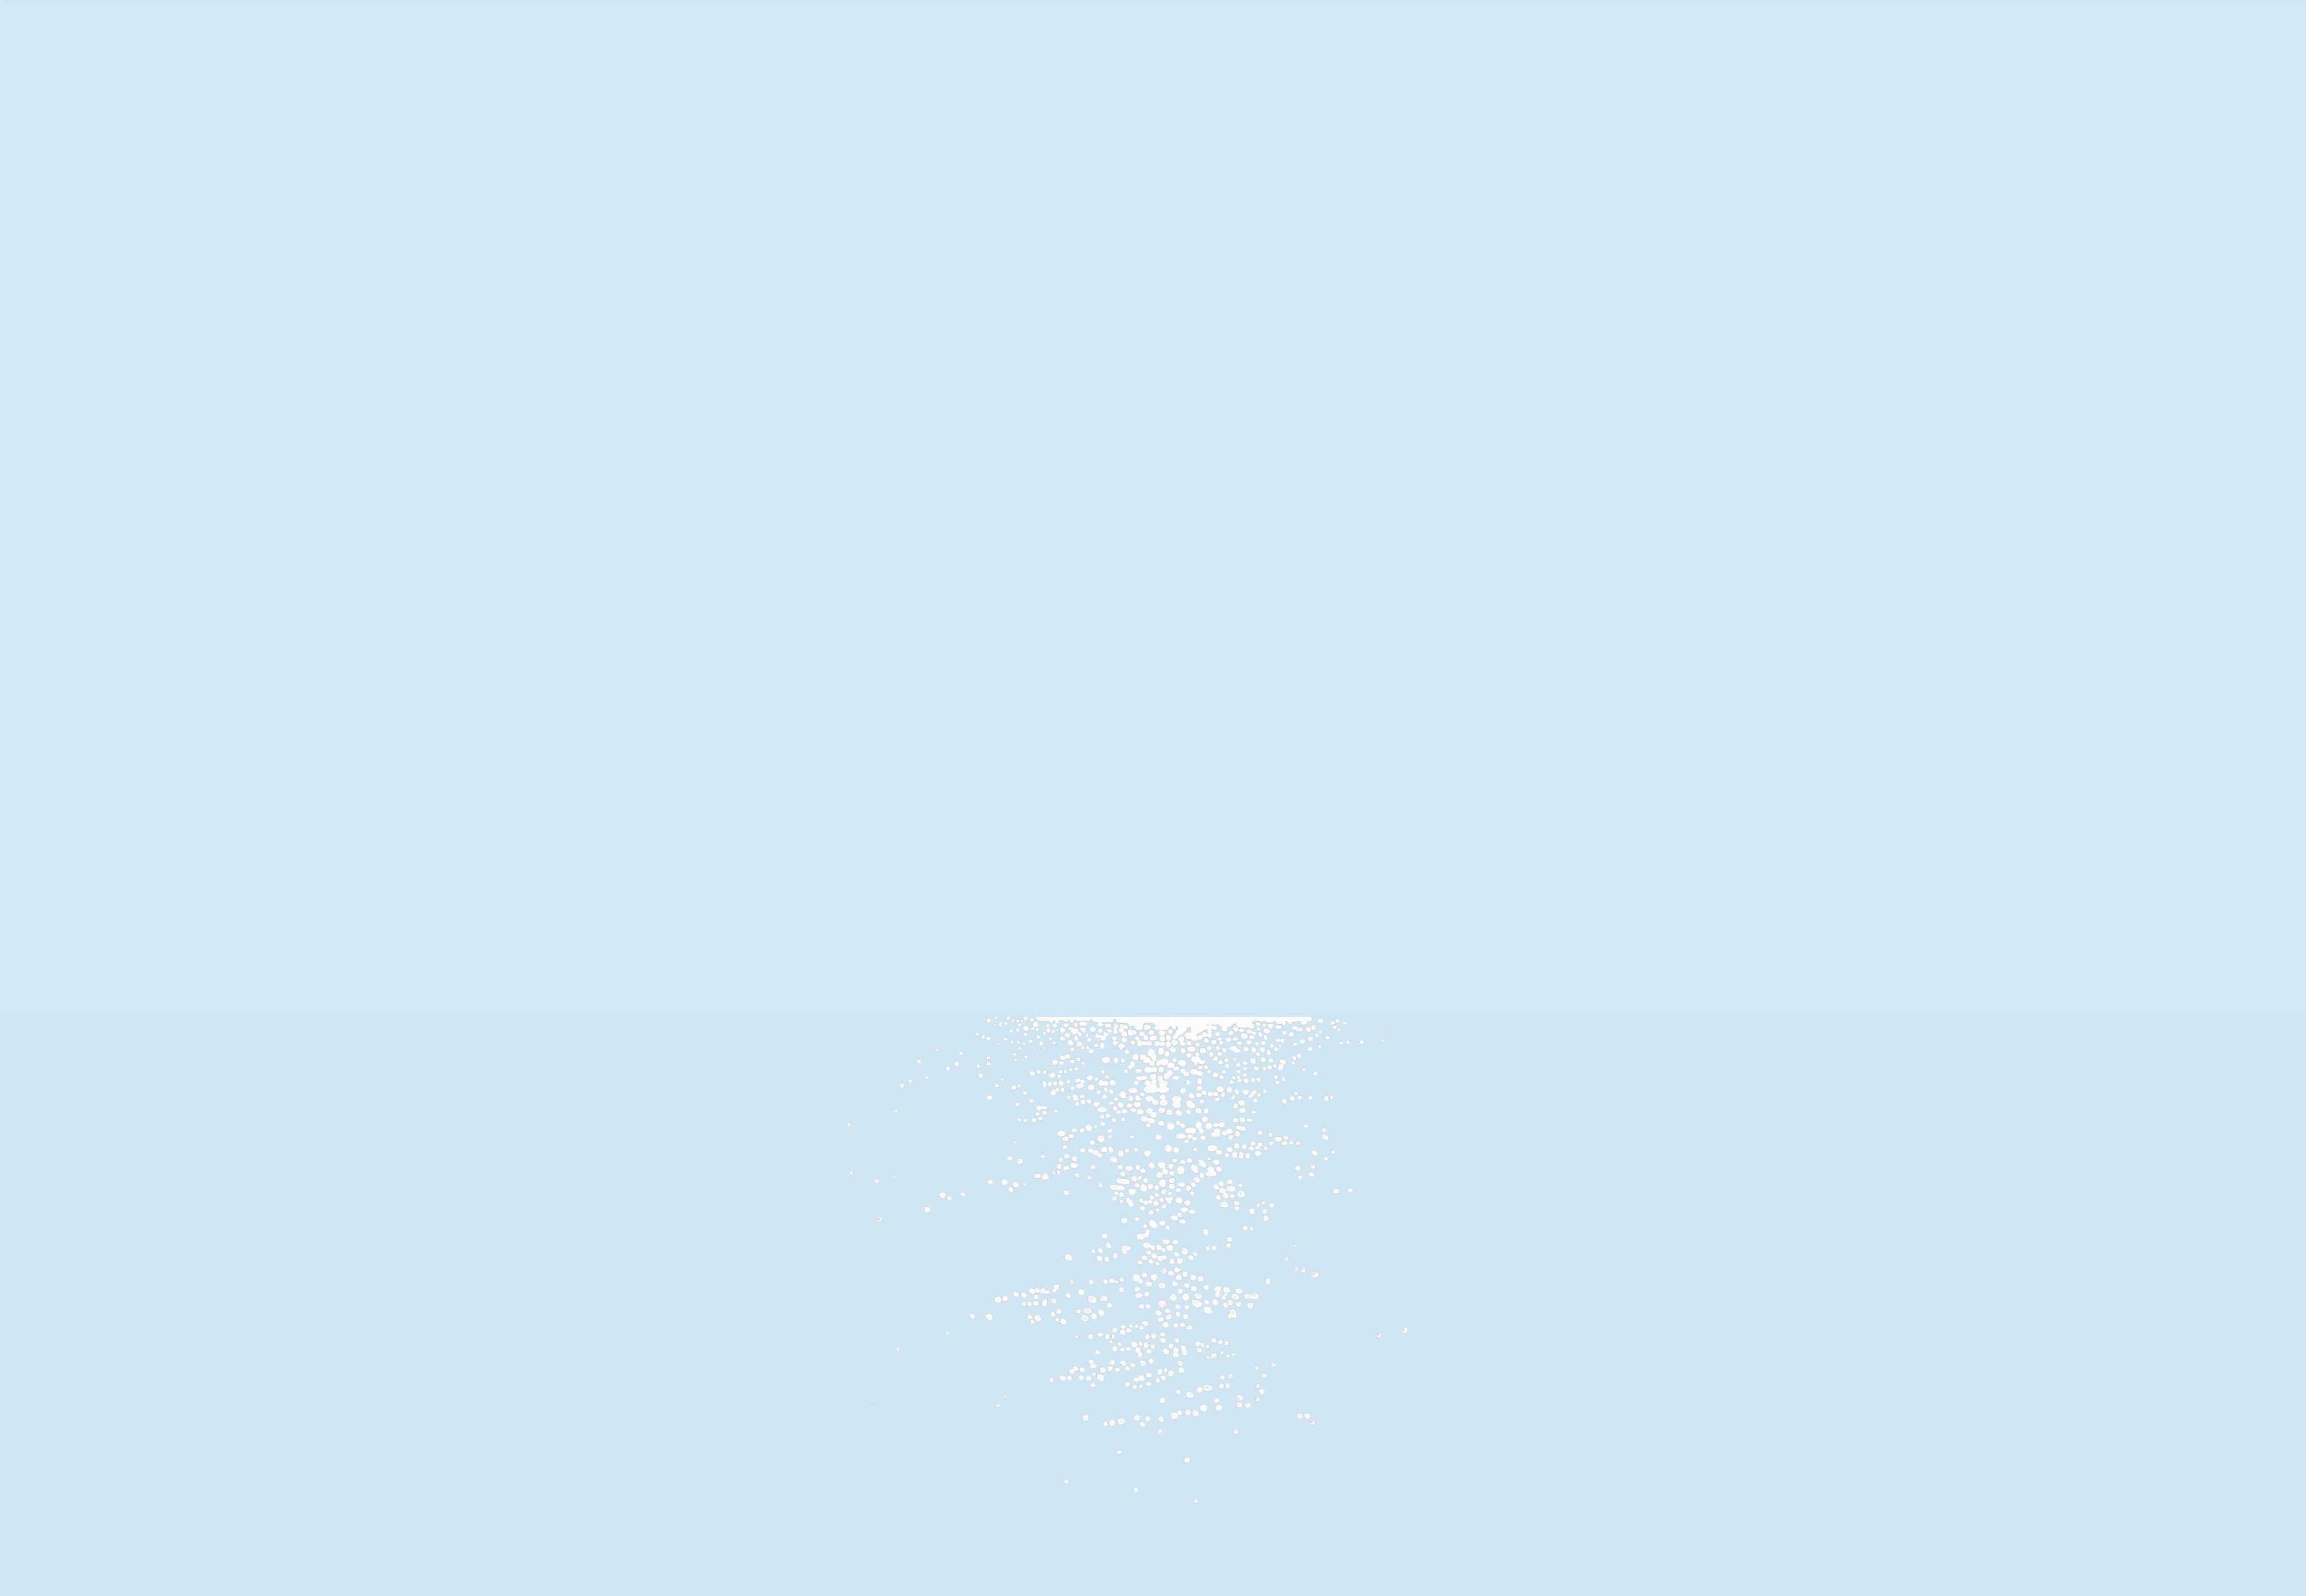 Light 5 juillet 04:23, peinture de paysage moderne, minimaliste, abstraite, vue sur la mer